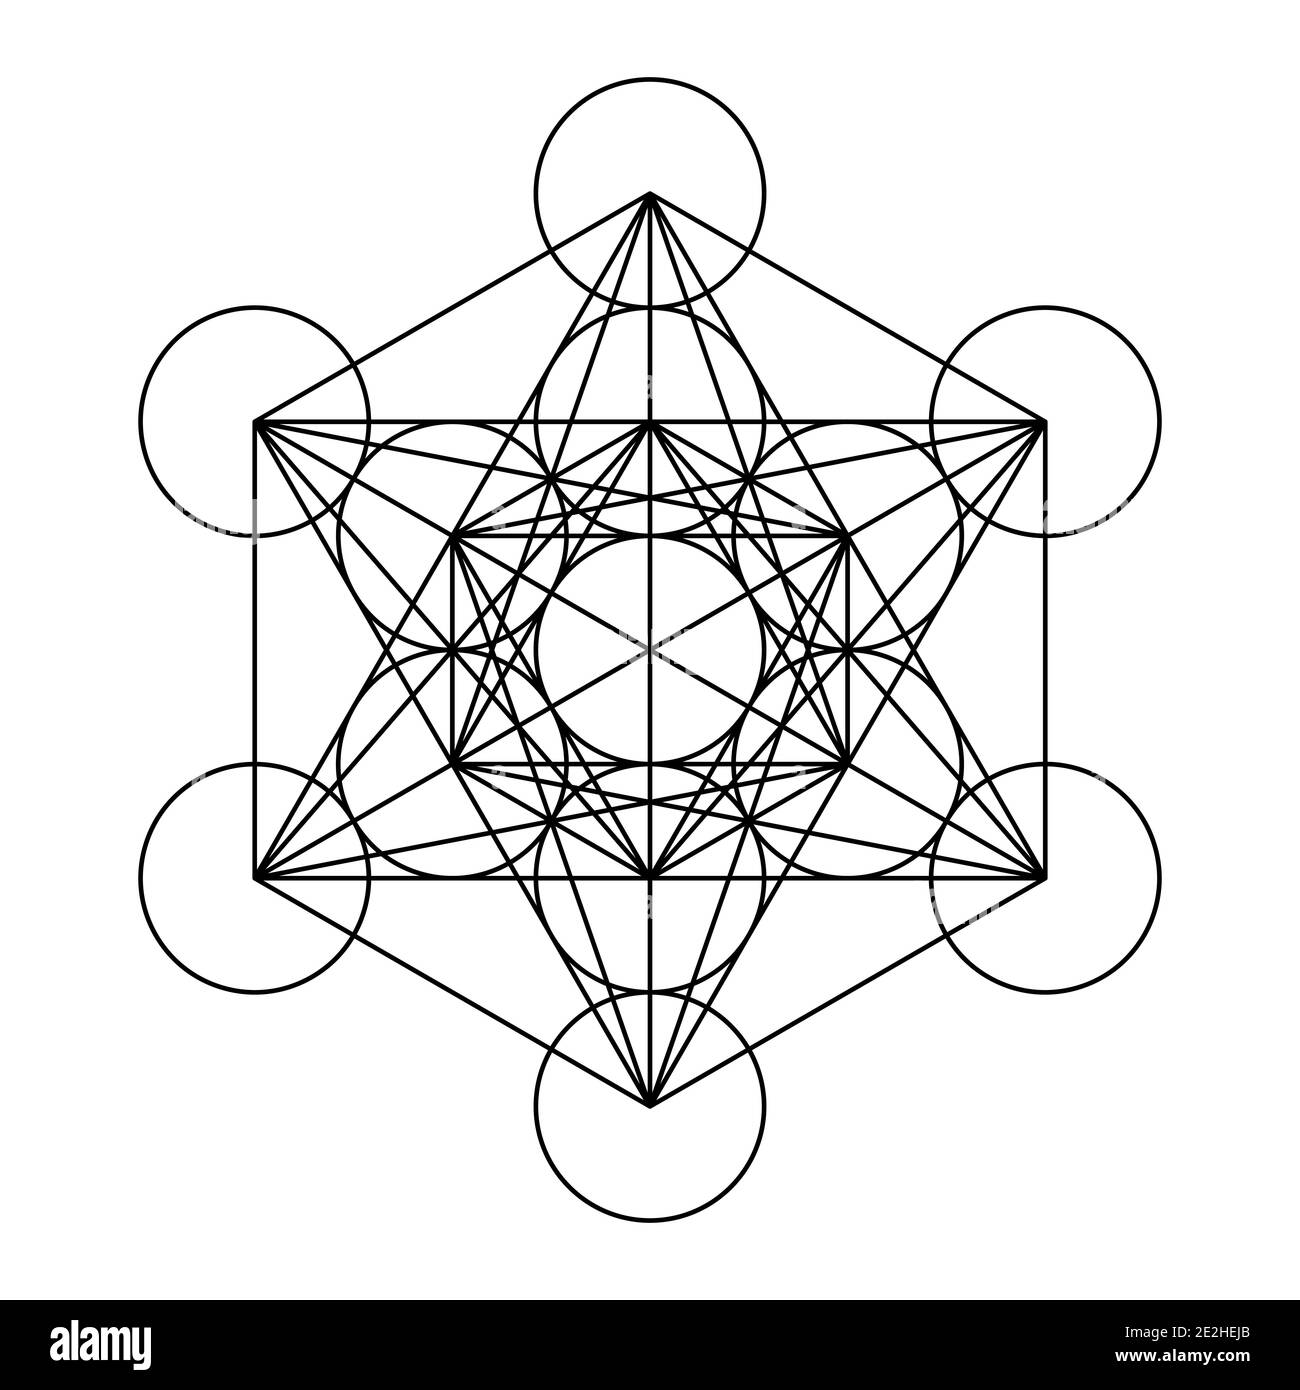 Metatrons Cube, un simbolo mistico, derivato dal Fiore della vita. Tutti e tredici i cerchi sono collegati con linee rette. Geometria sacra. Foto Stock